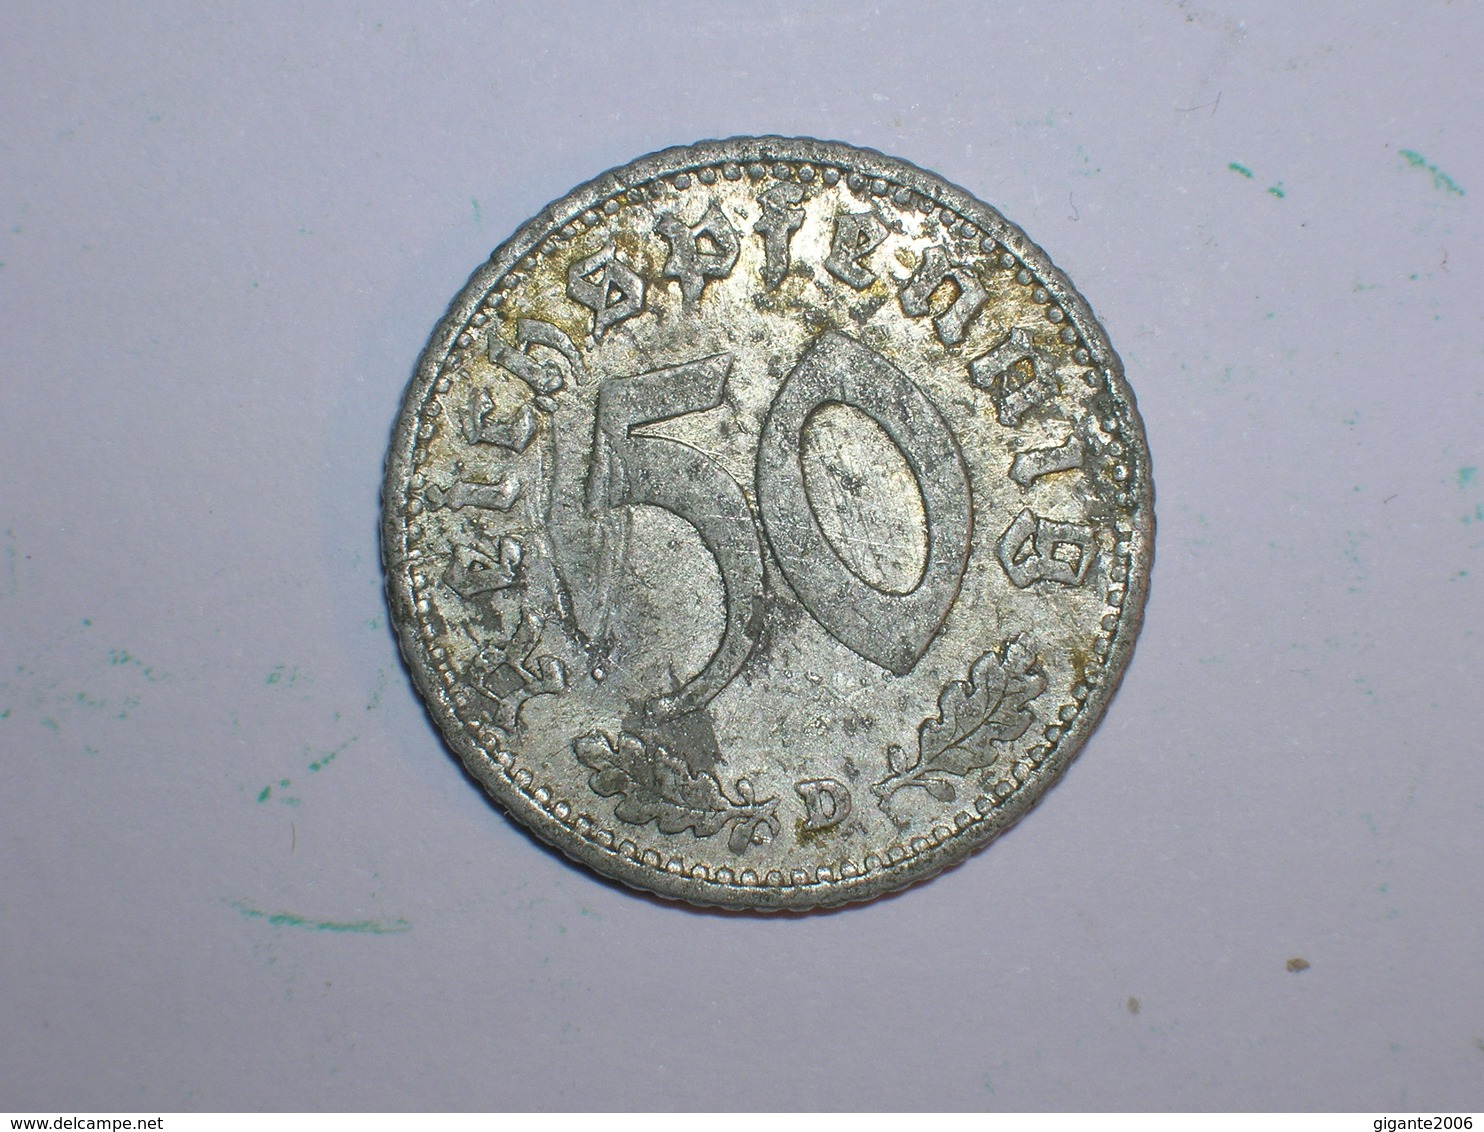 ALEMANIA 50 PFENNIG 1935 D (1218) - 50 Reichspfennig